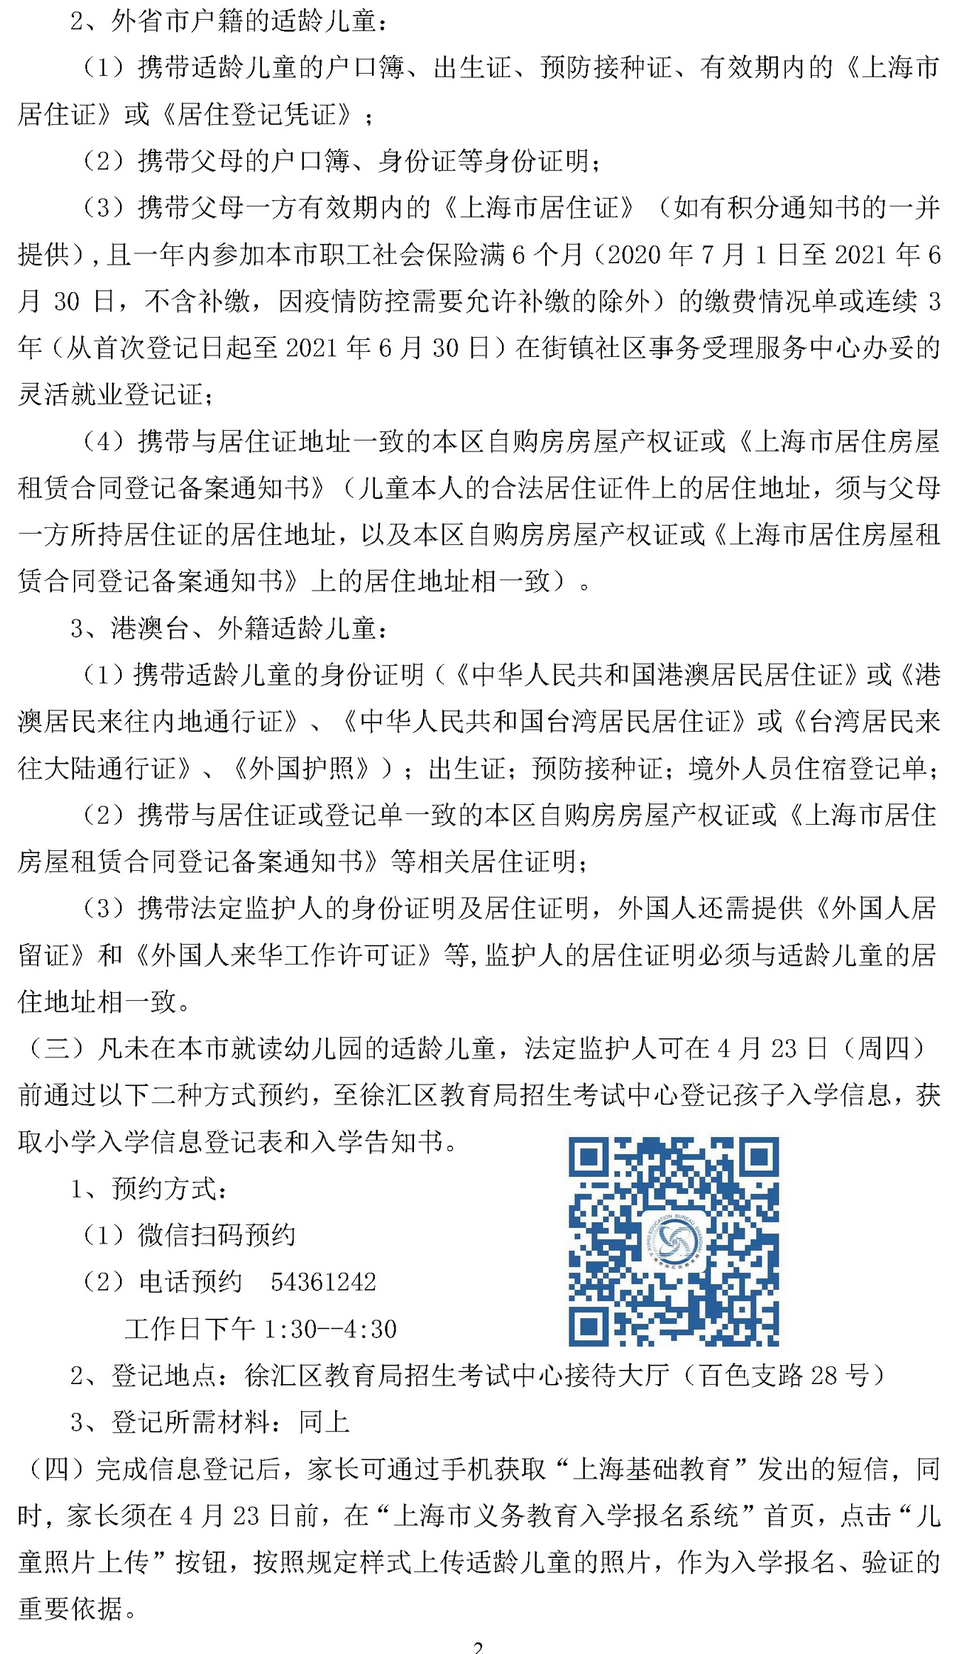 2021年徐汇区小学一年级招生通告20200319_页面_2.png